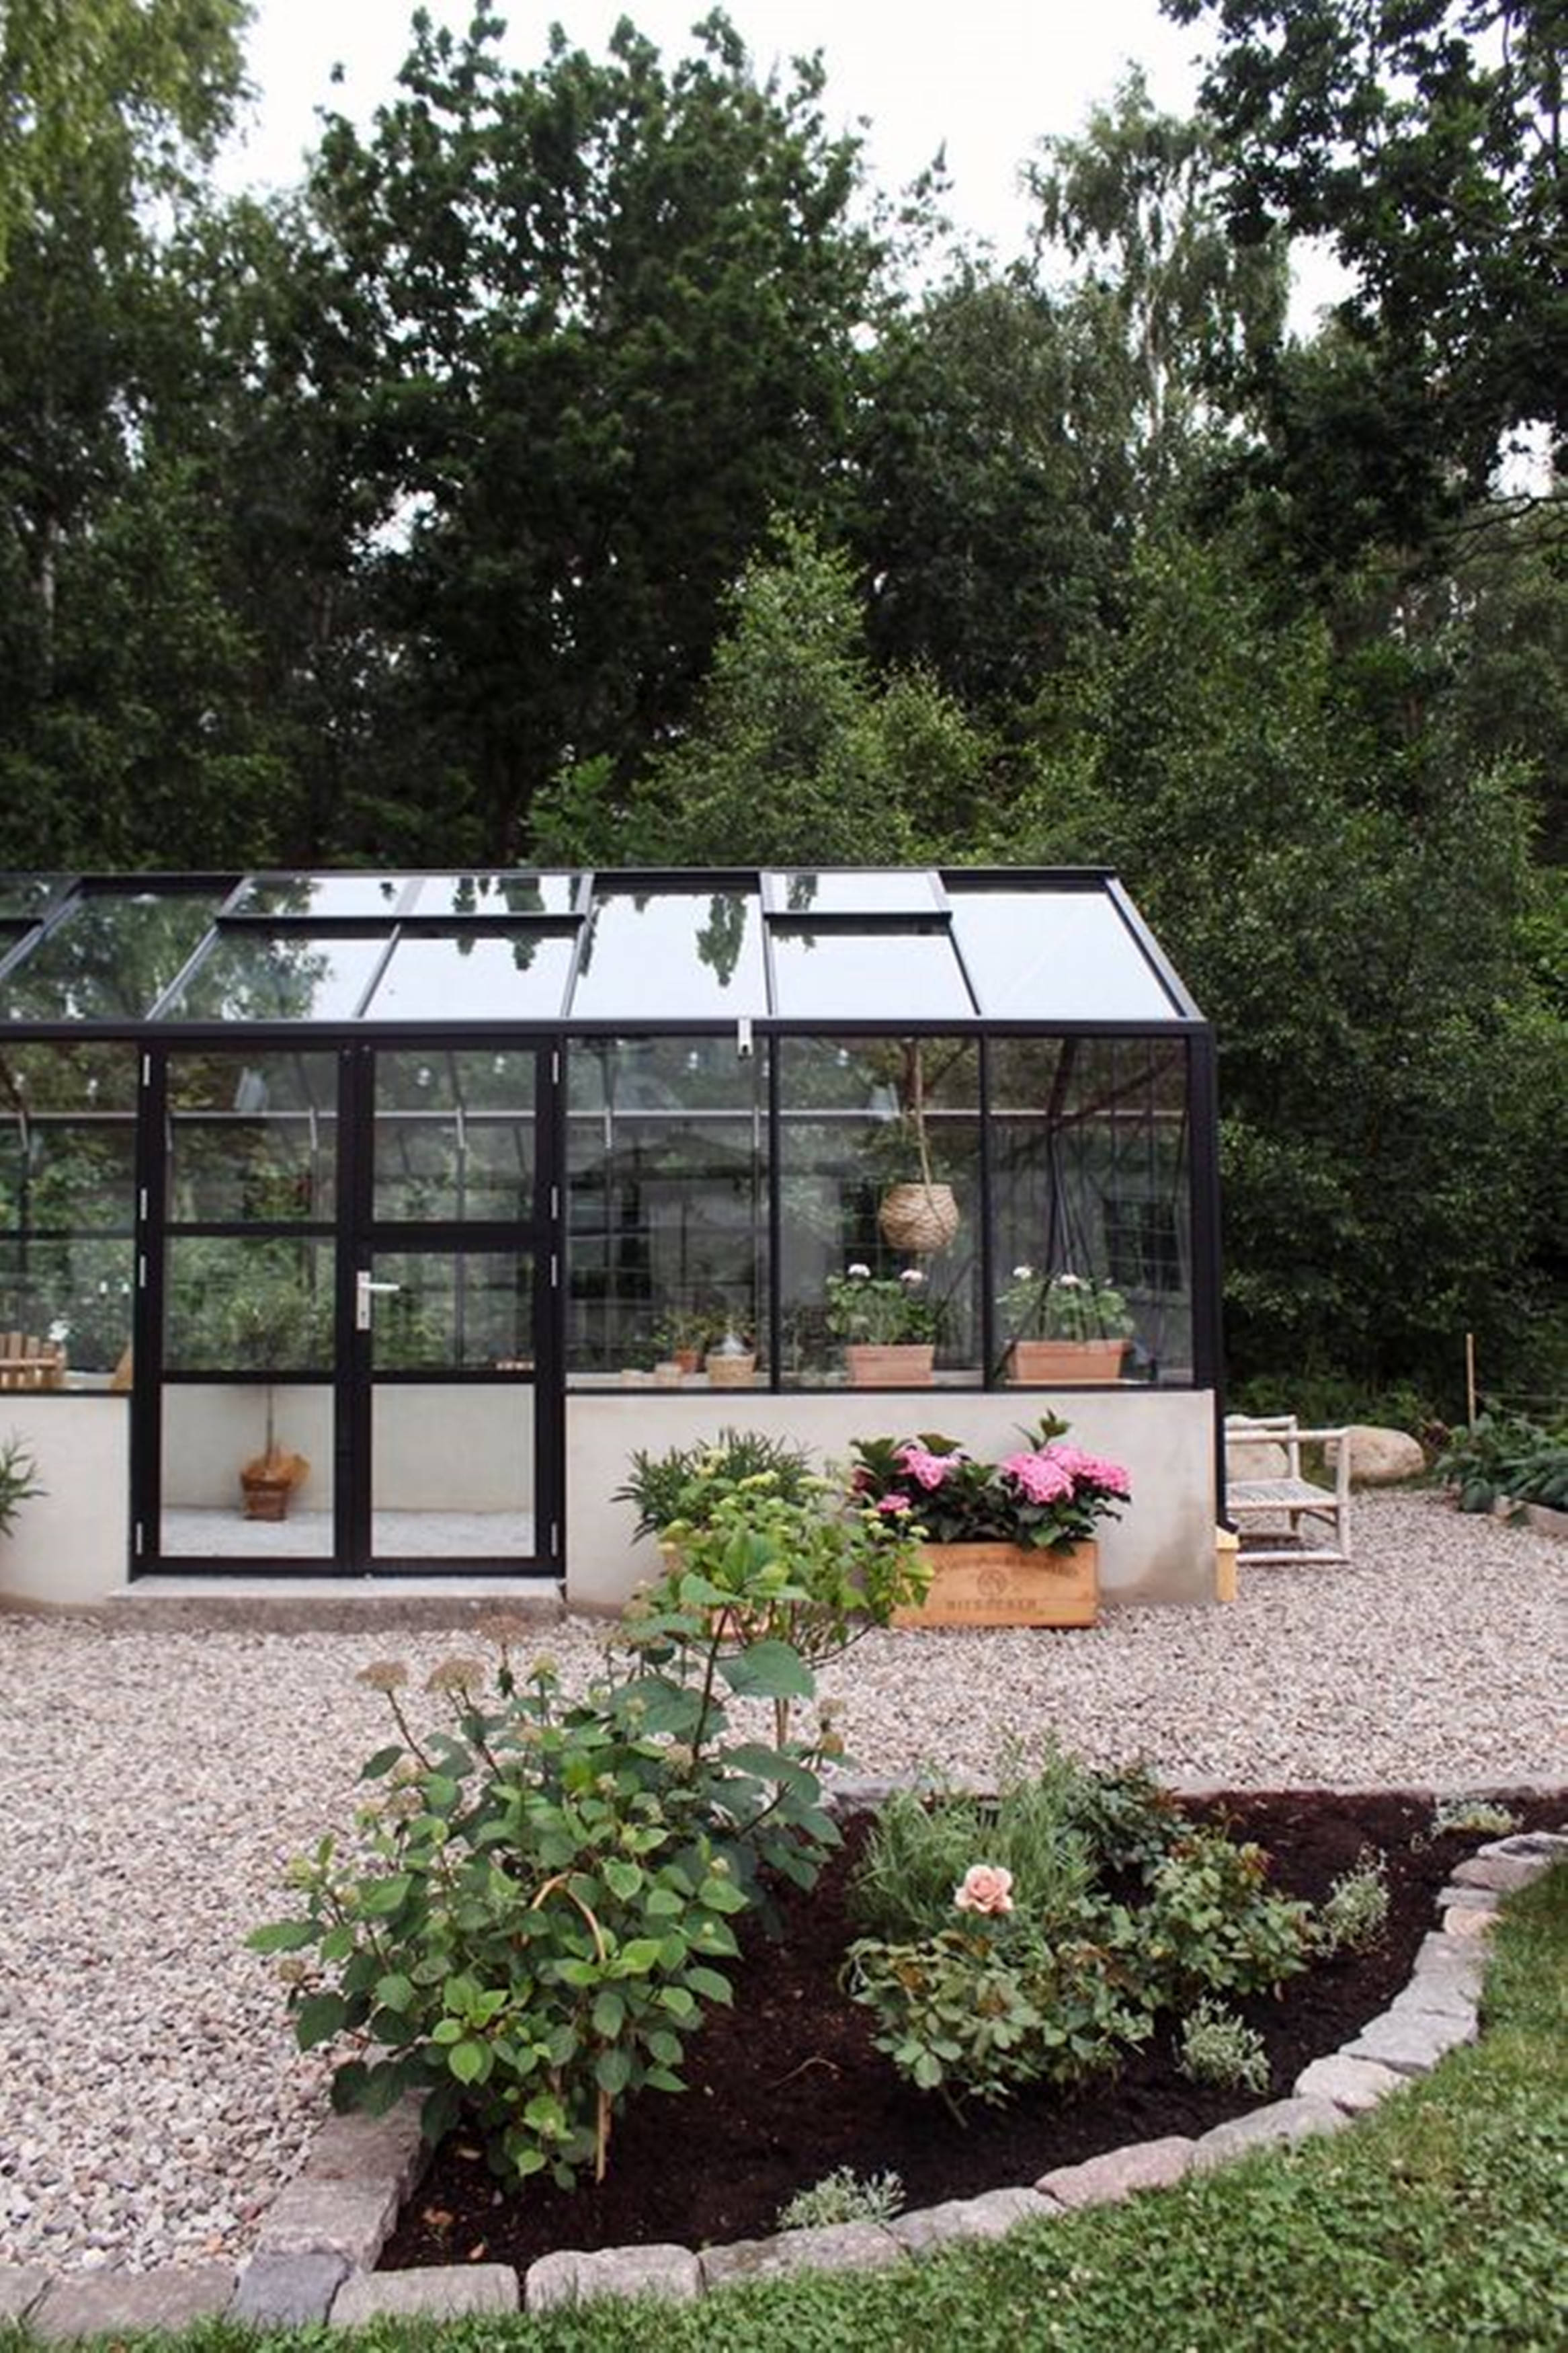 如果有院子,我一定搭一个玻璃房,面积不大,只为赏花,收果,嗅芬芳